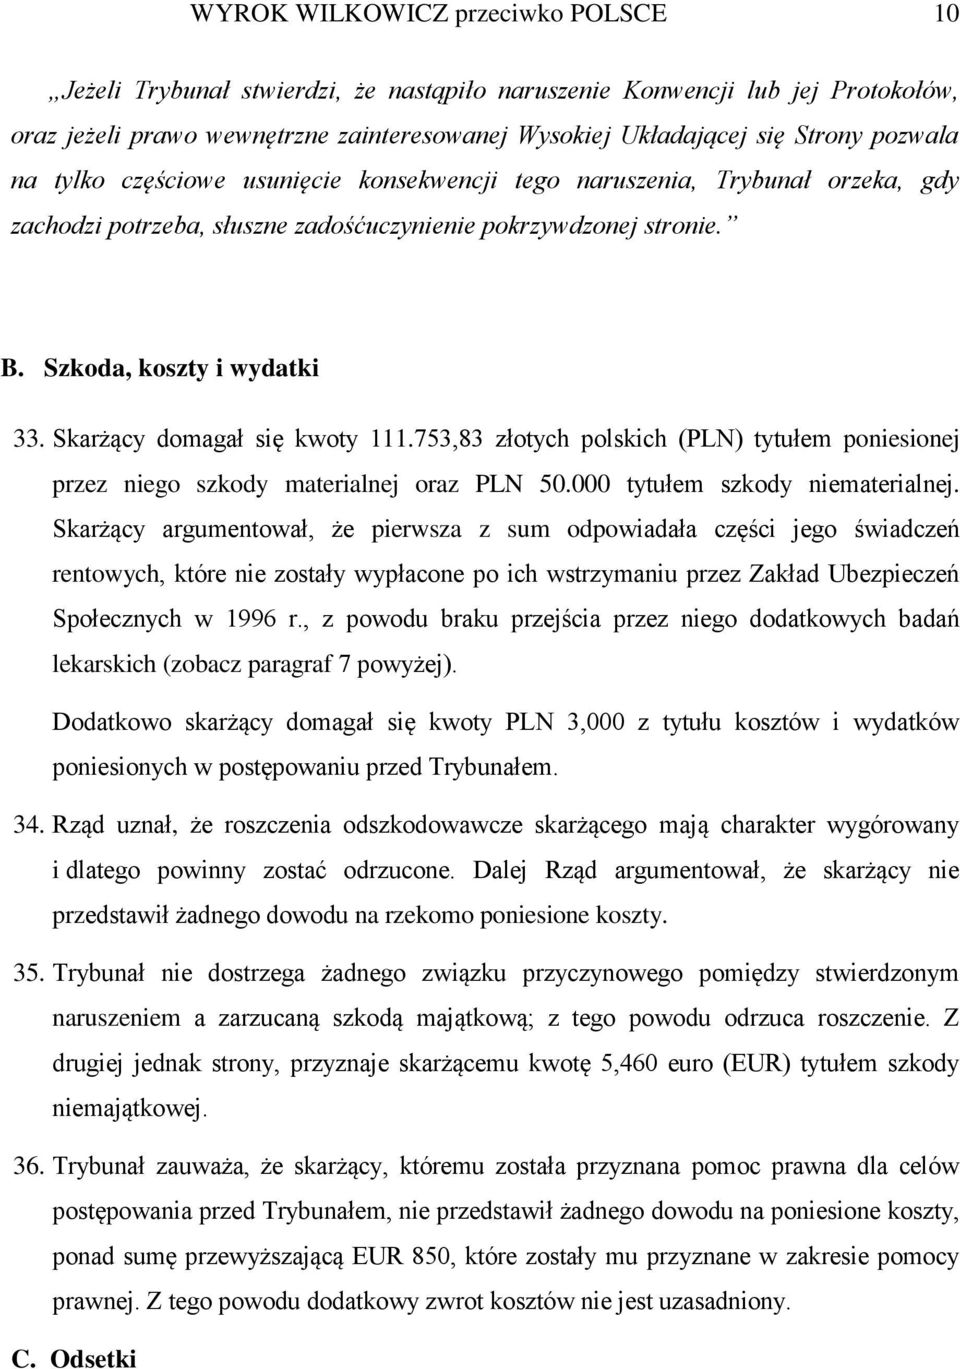 Skarżący domagał się kwoty 111.753,83 złotych polskich (PLN) tytułem poniesionej przez niego szkody materialnej oraz PLN 50.000 tytułem szkody niematerialnej.